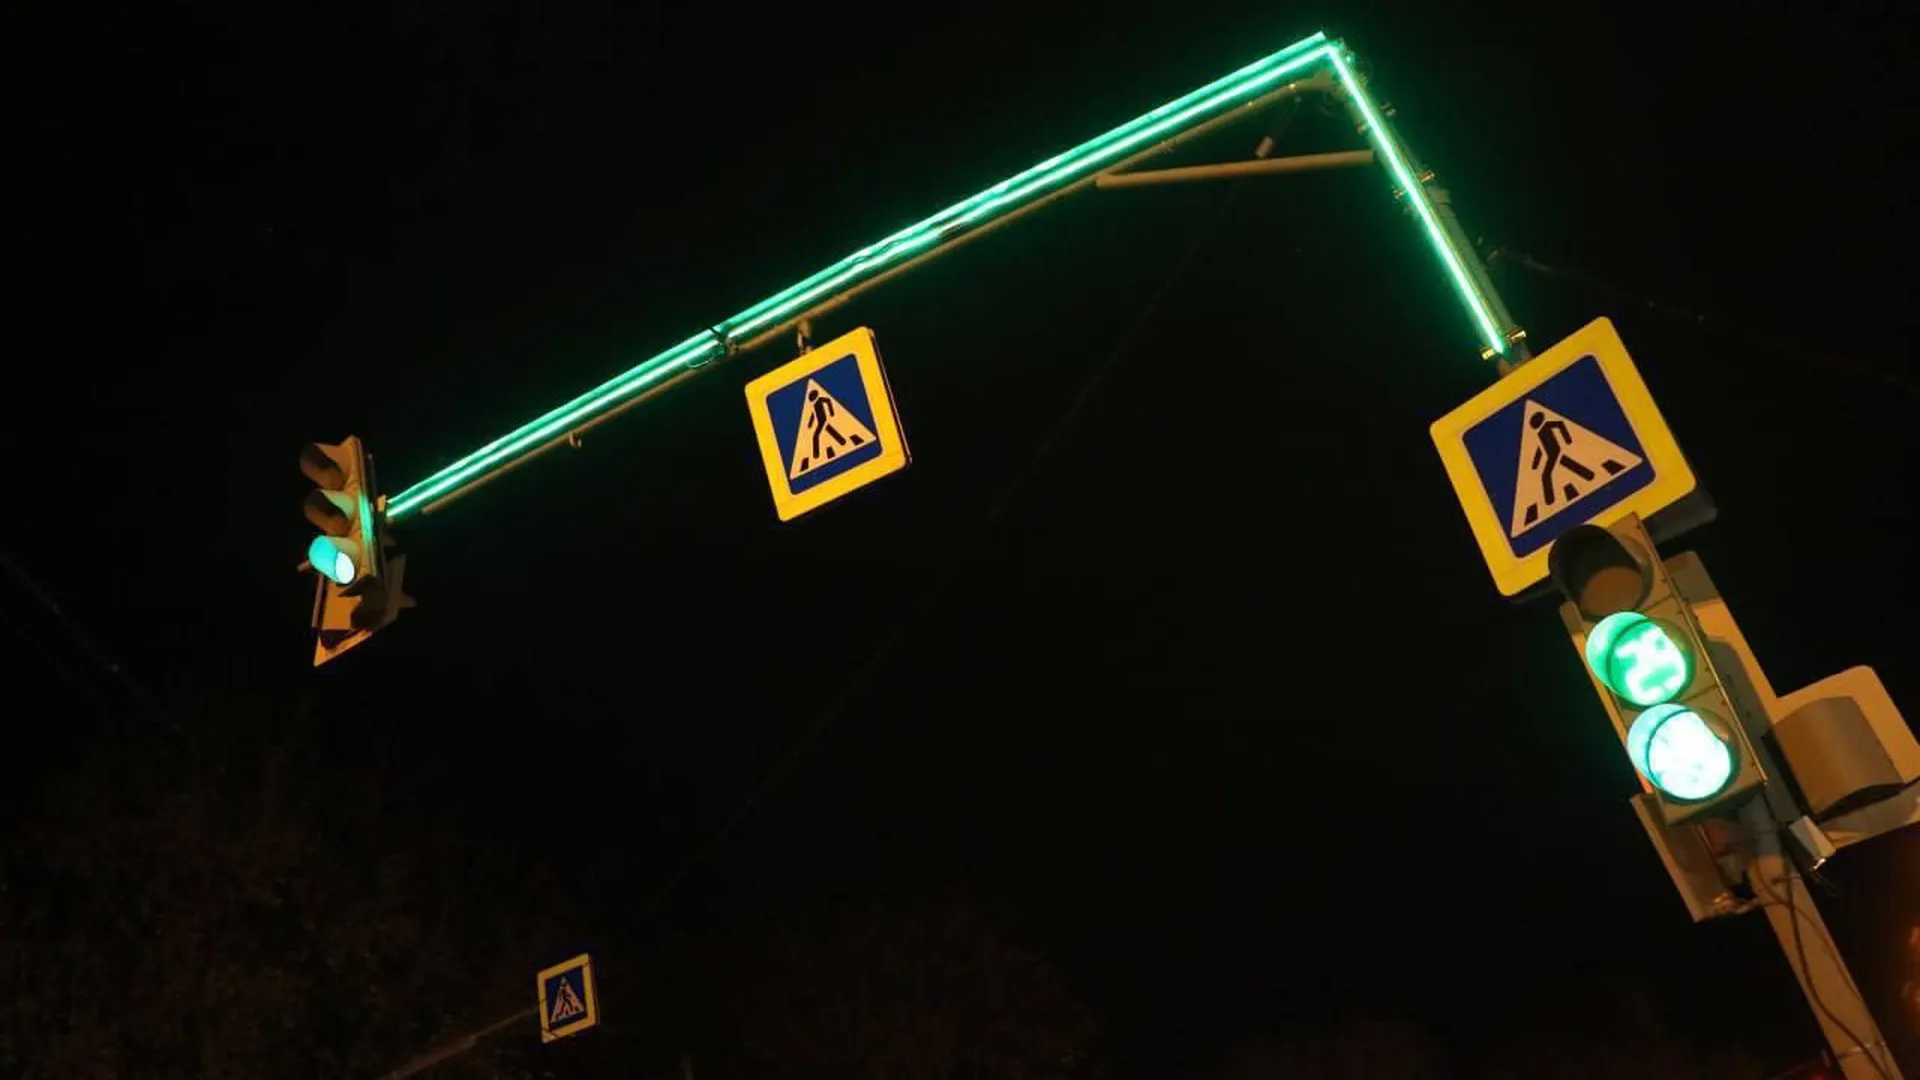 Модернизацию светофорных объектов успешно провели в Красногорске